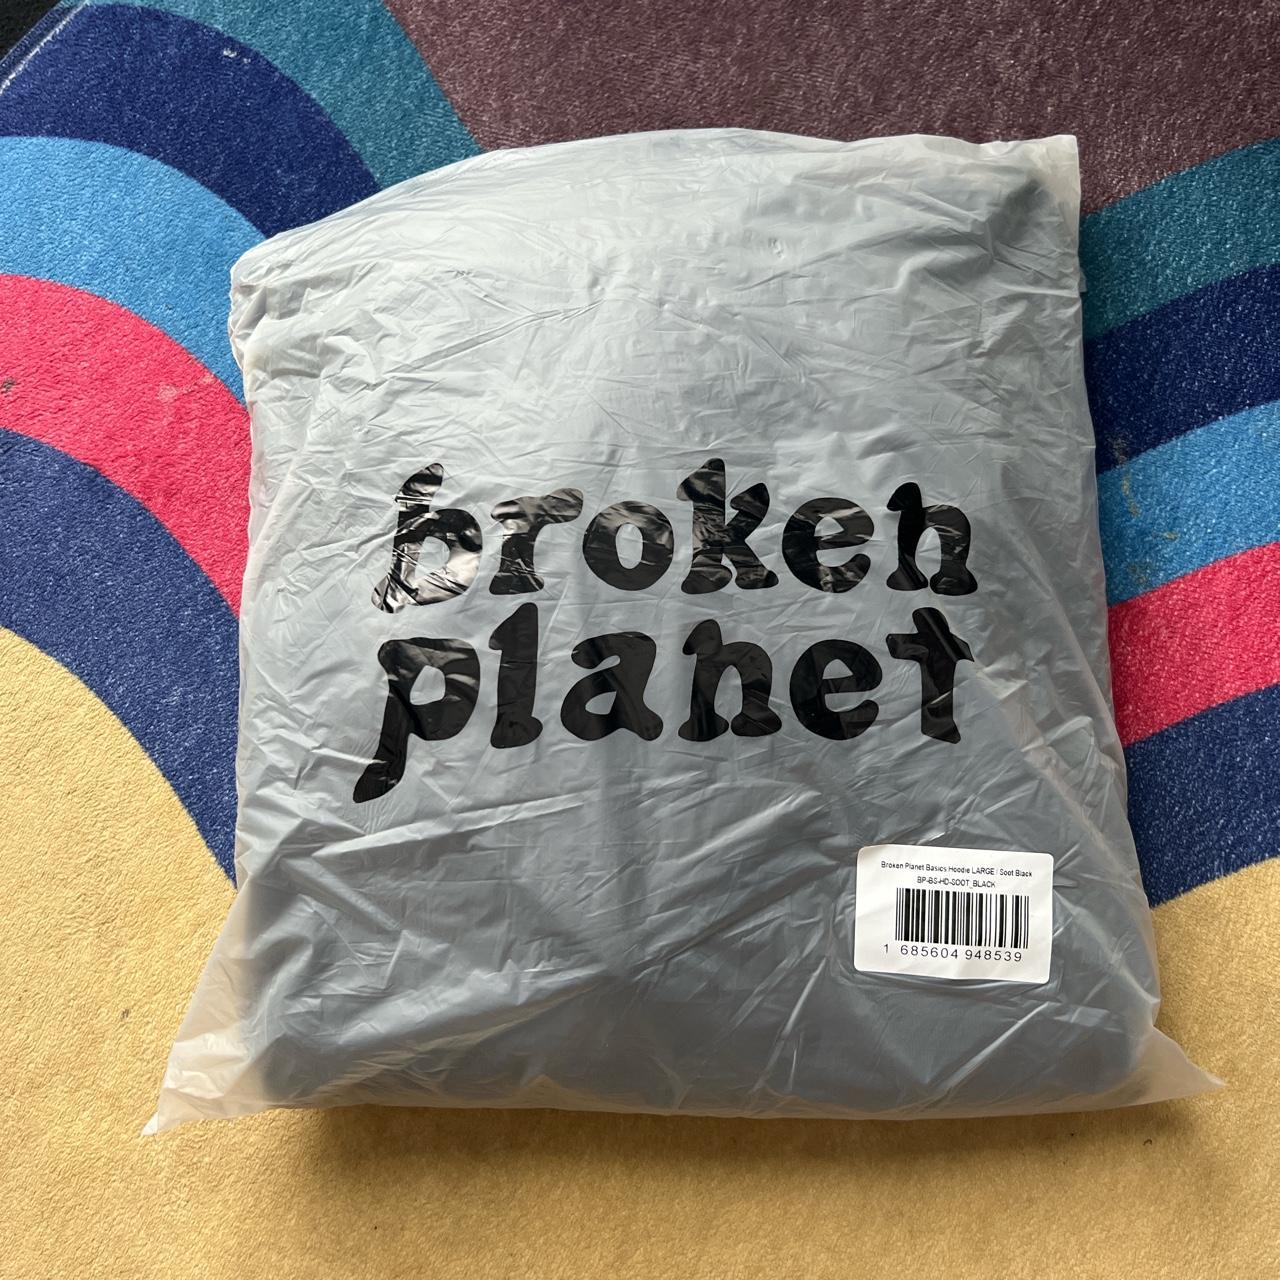 Broken planet-market-hoodie - Depop